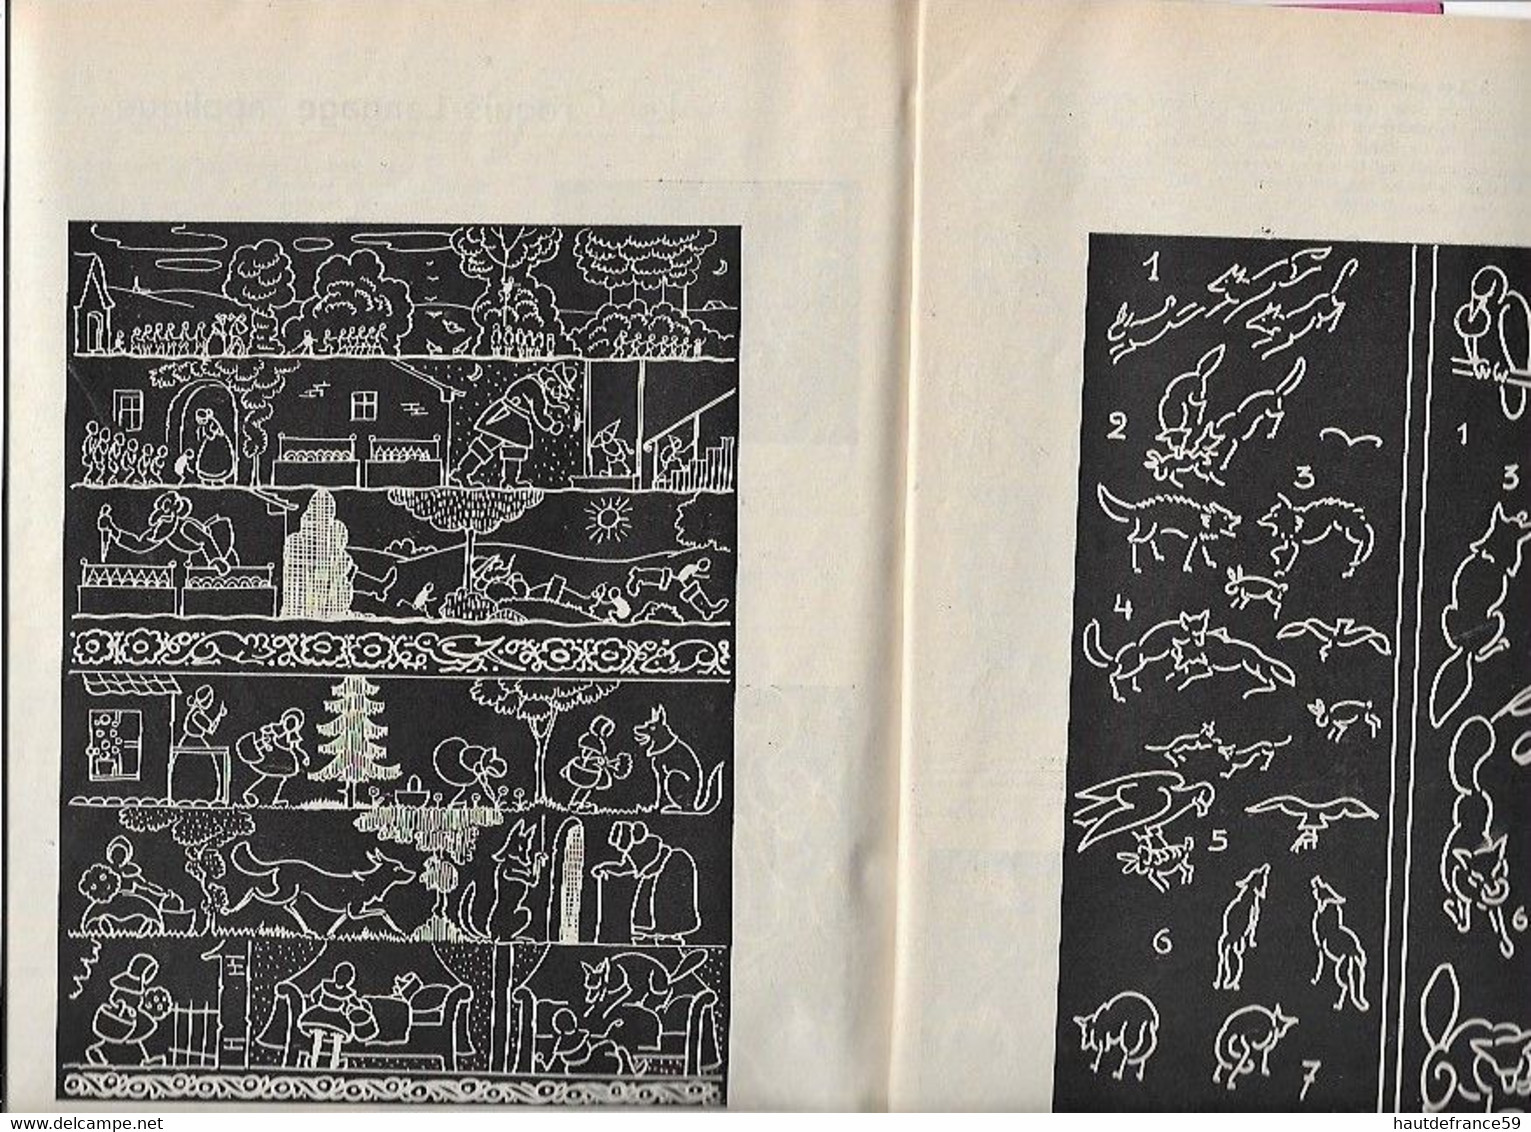 enseignement du dessin COURS STUDIO  1937 LE CROQUIS RATIONEL cours II - La Louvière Belgique nombreux dessins schémas